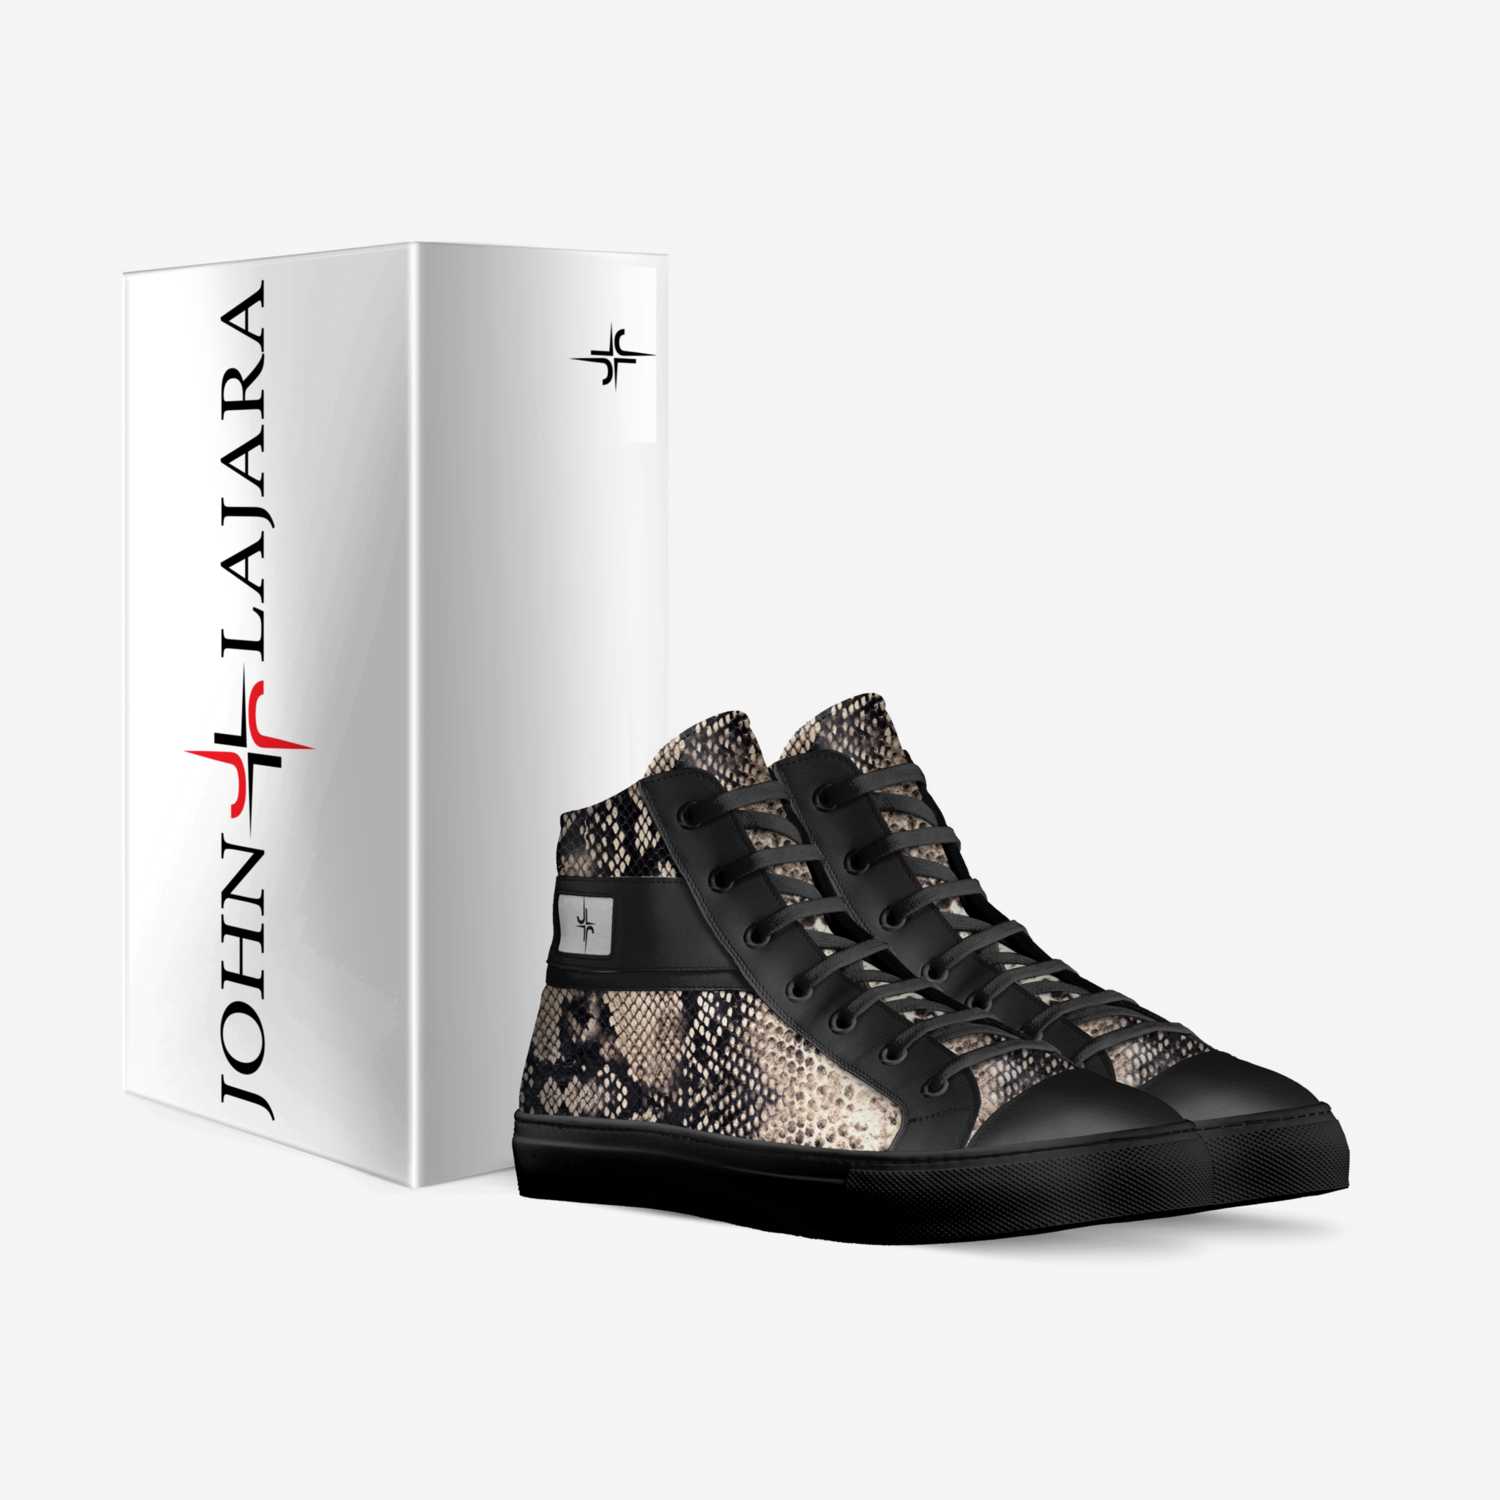 JOHN LAJARA custom made in Italy shoes by John Lajara | Box view